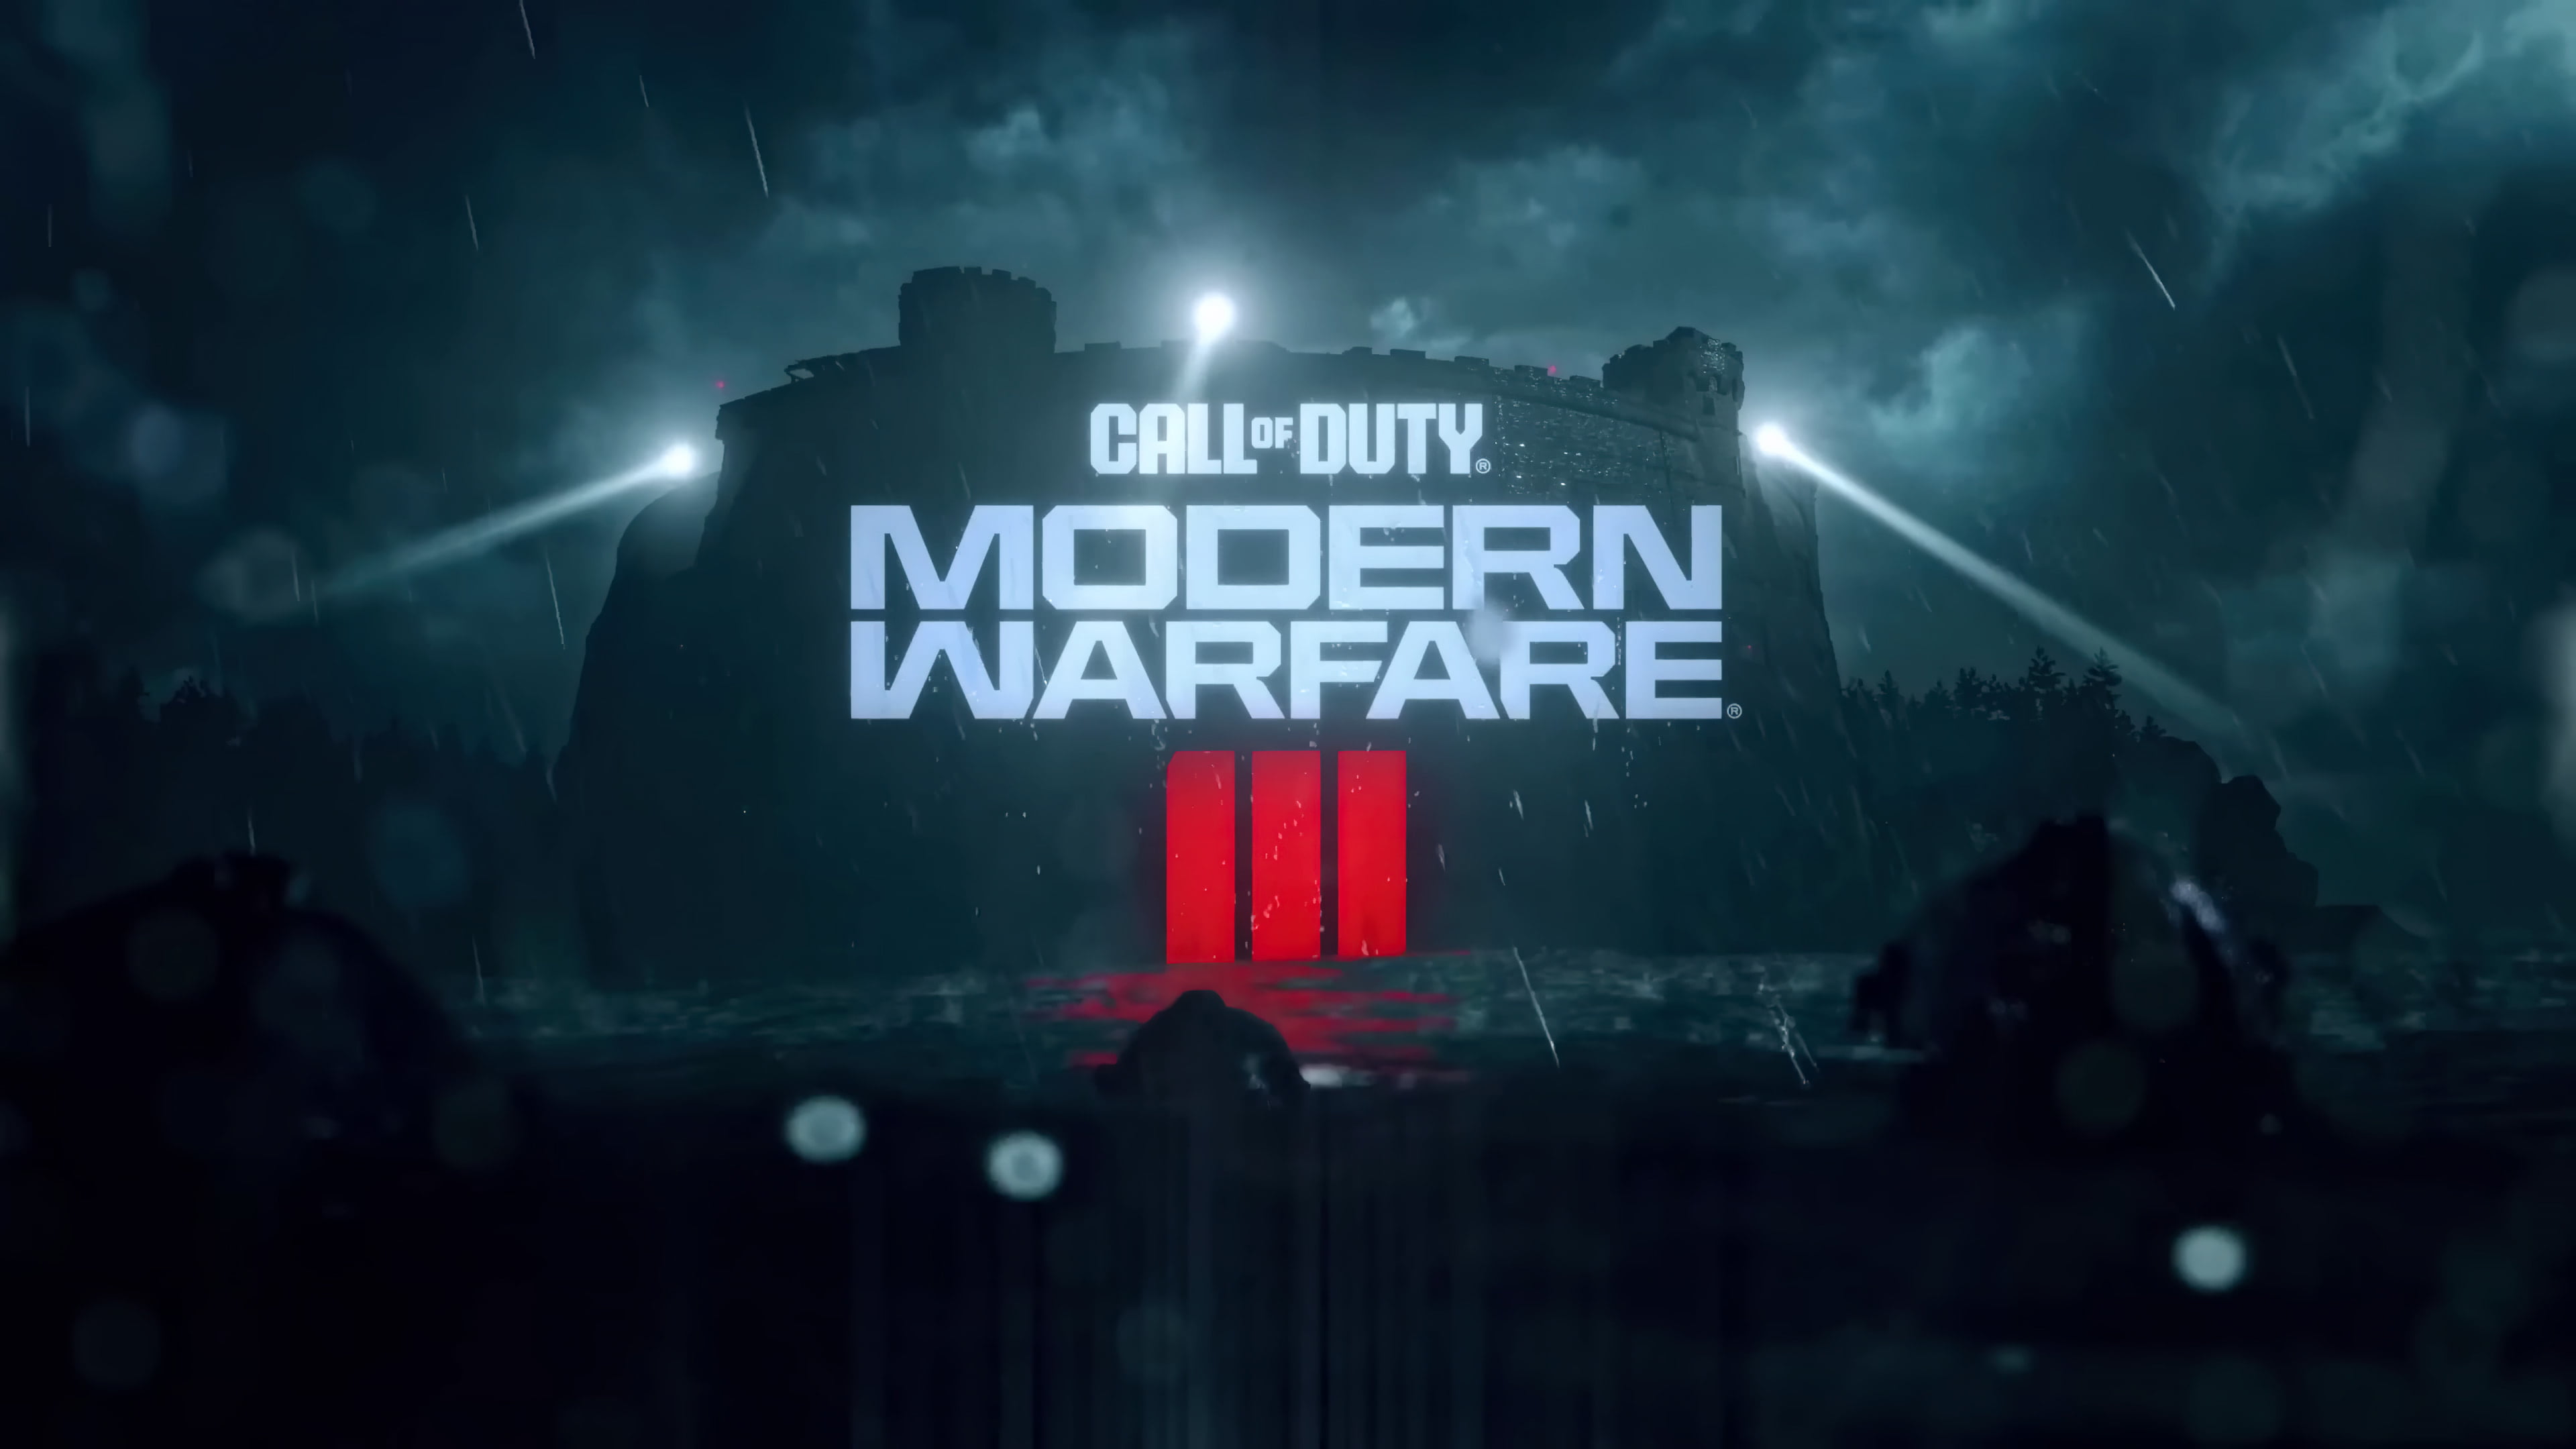 Call Of Duty Modern Warfare 4k Wallpaper,HD Games Wallpapers,4k